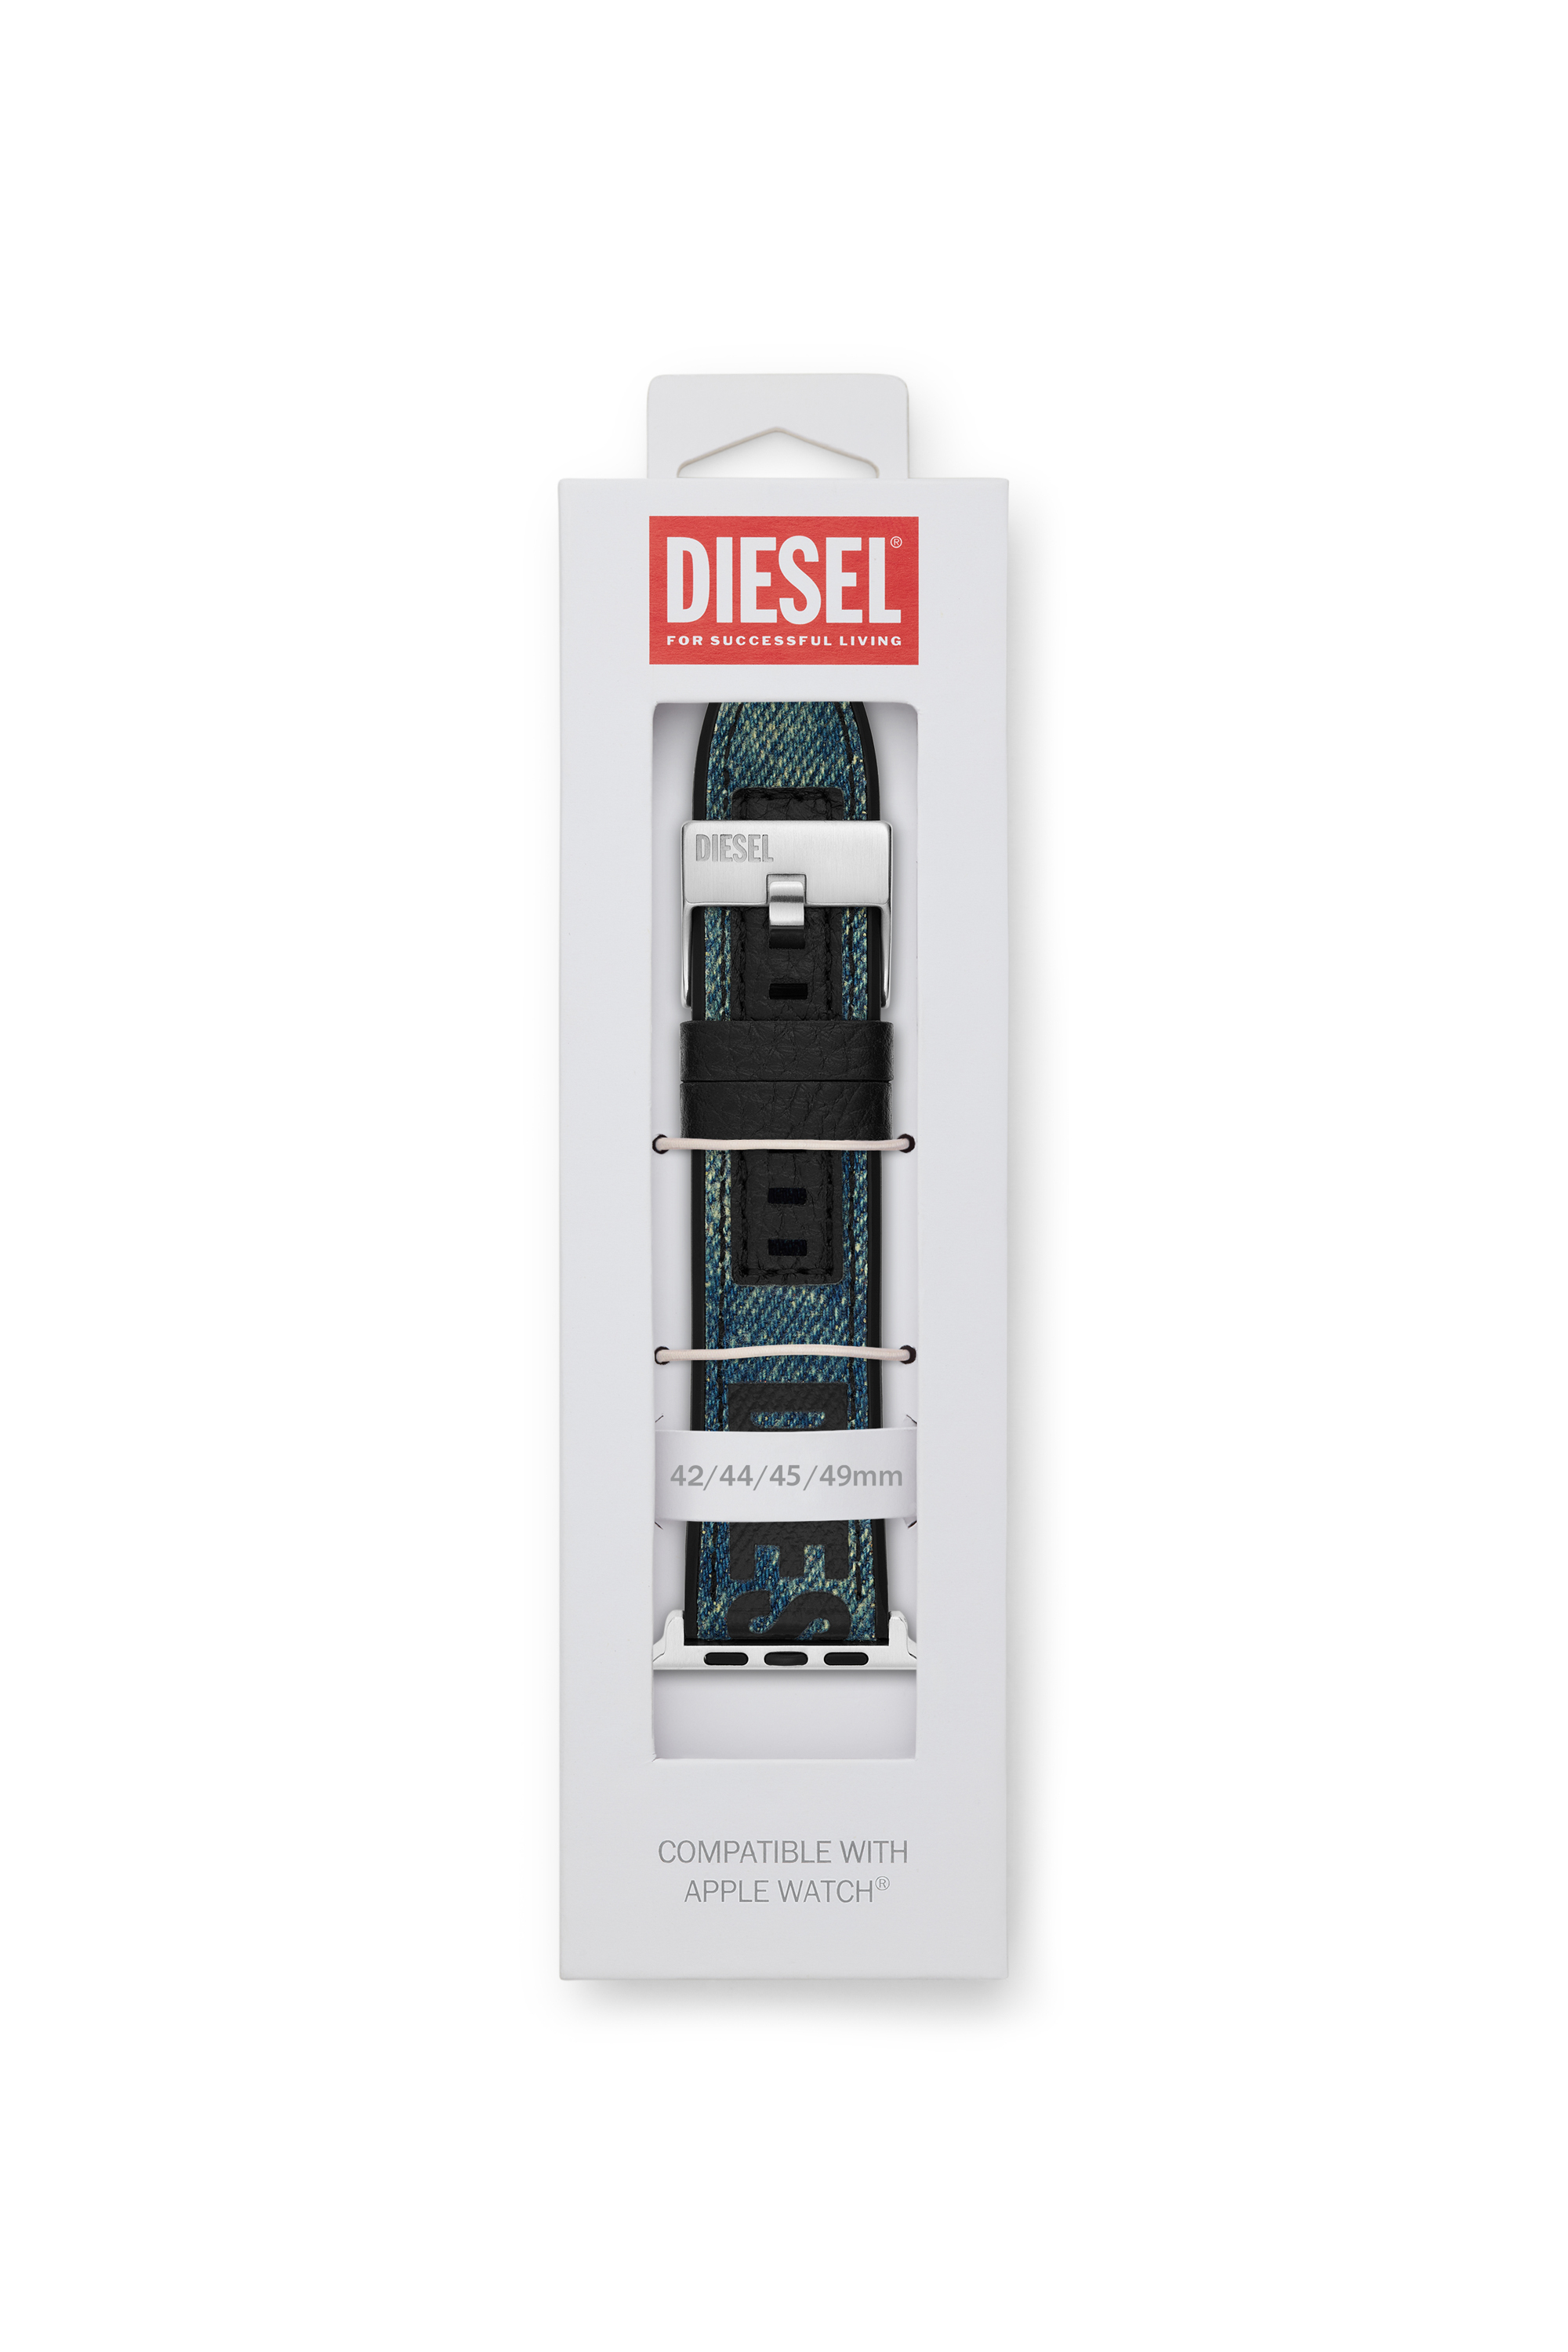 Diesel - DSS0016, Blu - Image 2